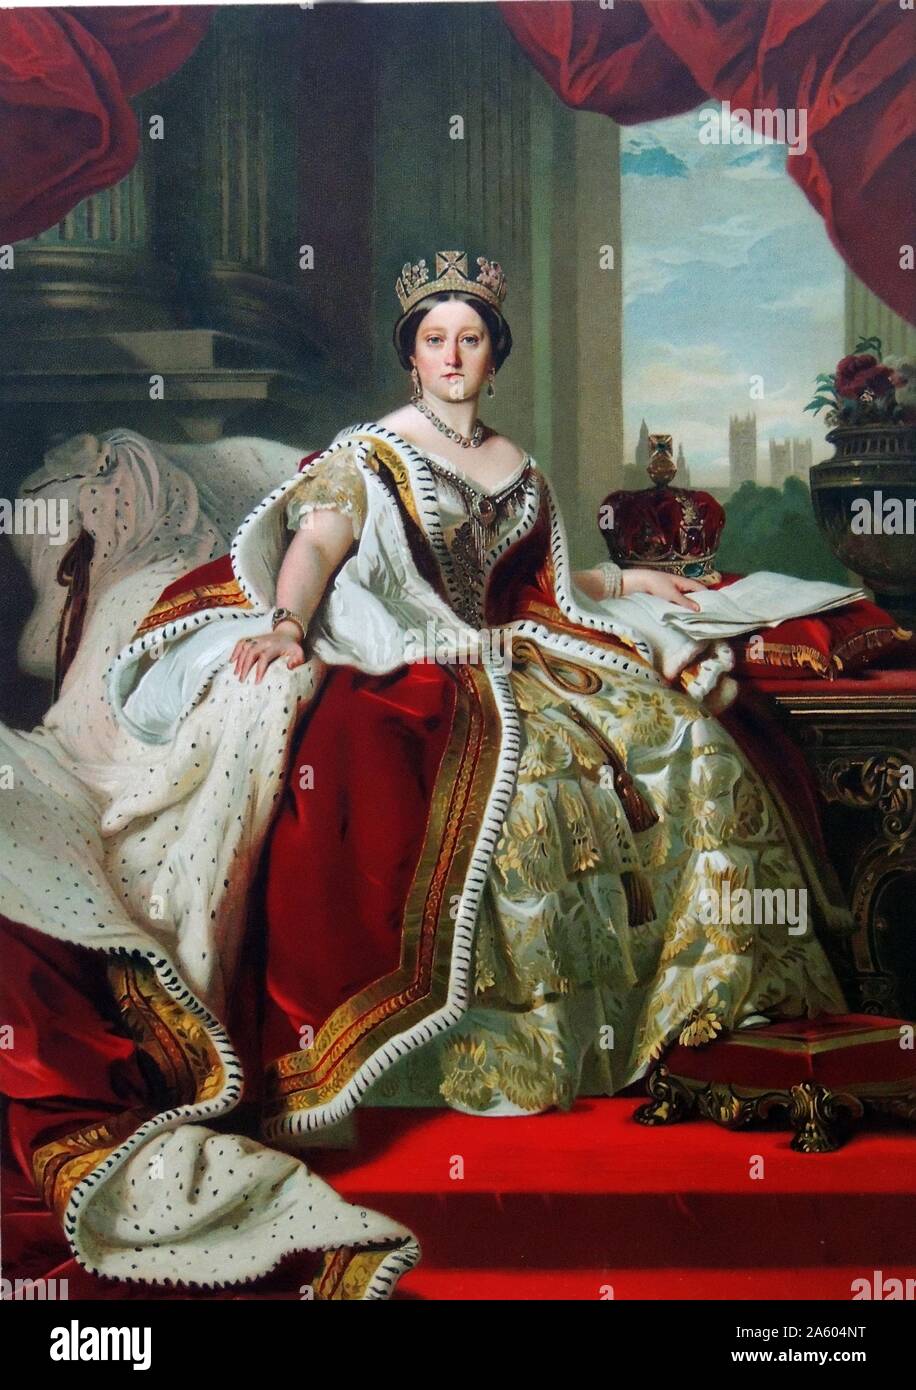 La reina Victoria (1819â€ì1901) retrato de la Reina Victoria en su abrigo de coronación y vistiendo el Estado Diadem. Fecha circa 1870 Óleo sobre lienzo después de Franz Xaver Winterhalter (1805â€ì1873) Foto de stock